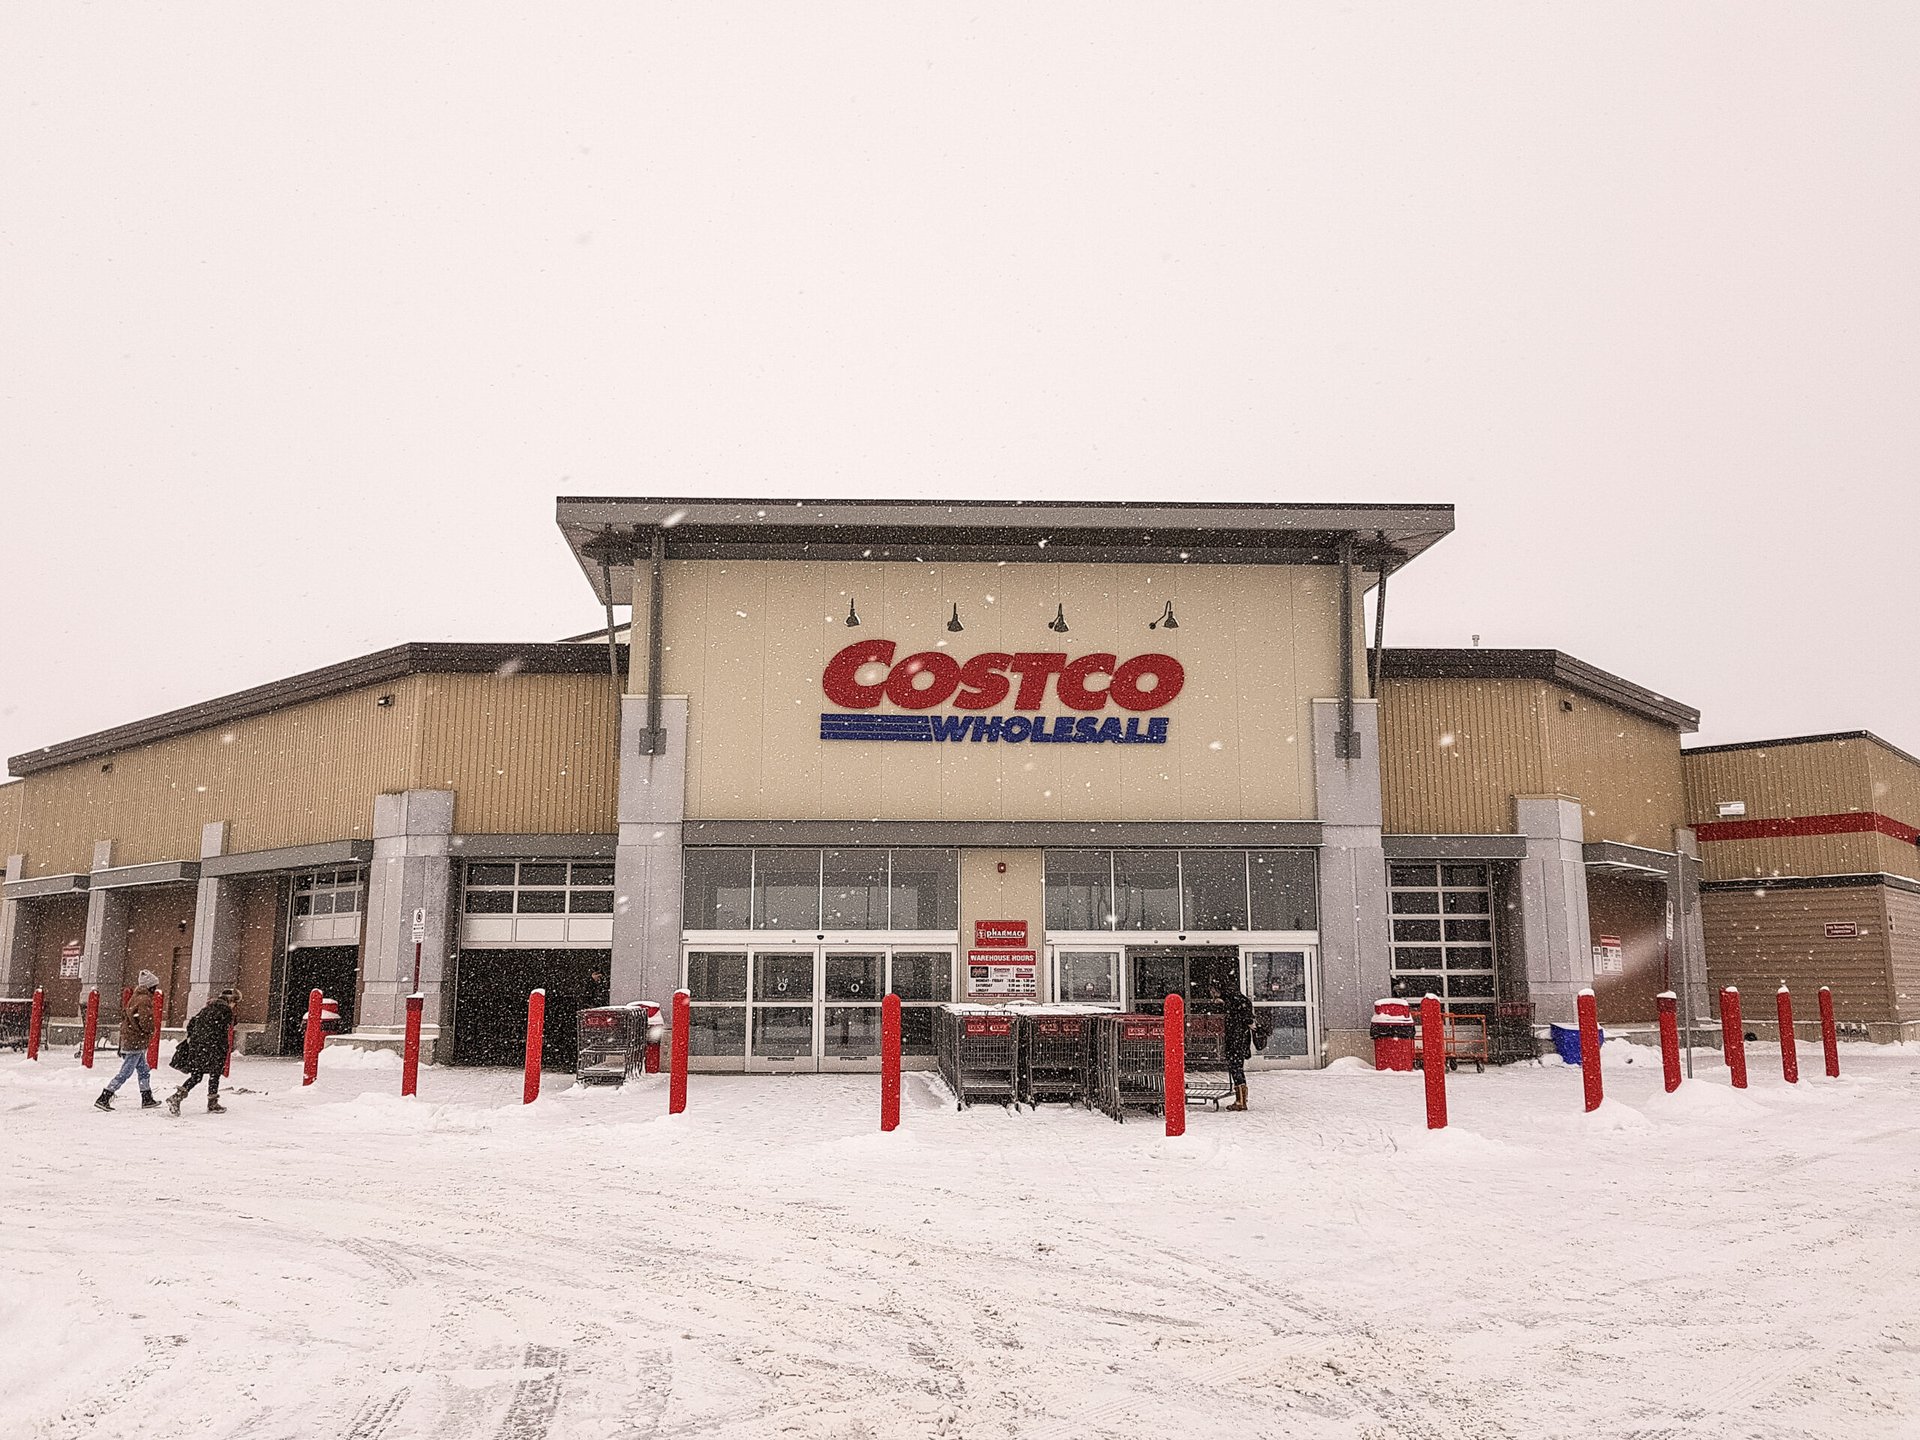 Costco store in winter